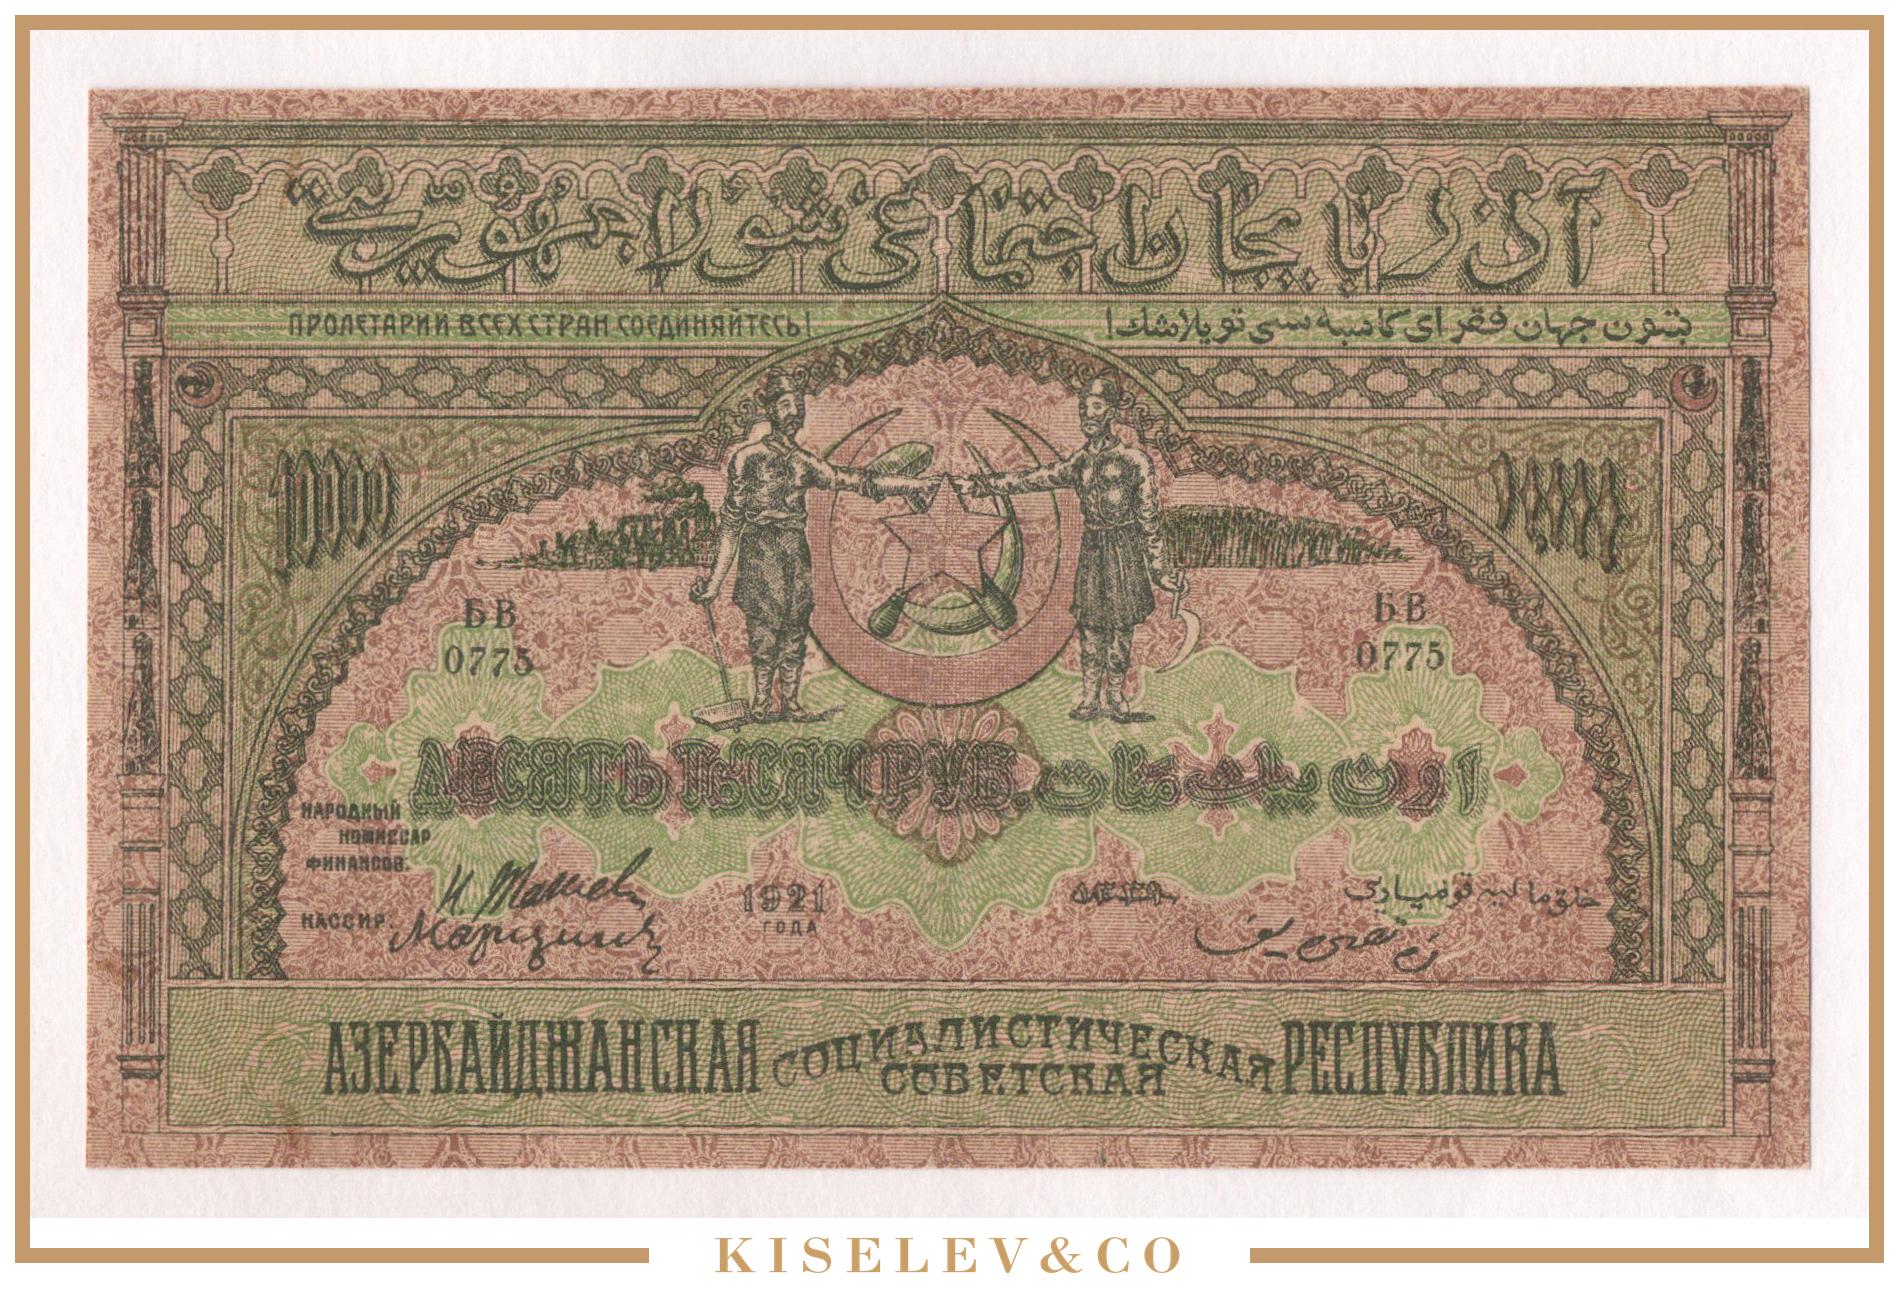 1000 рублей азербайджанский курс. 10000 Рублей 1921 PMG. 10 Млн руб 1921 года. Бакинские рубли 1000. 33 Азербайджанских денег в рублях.